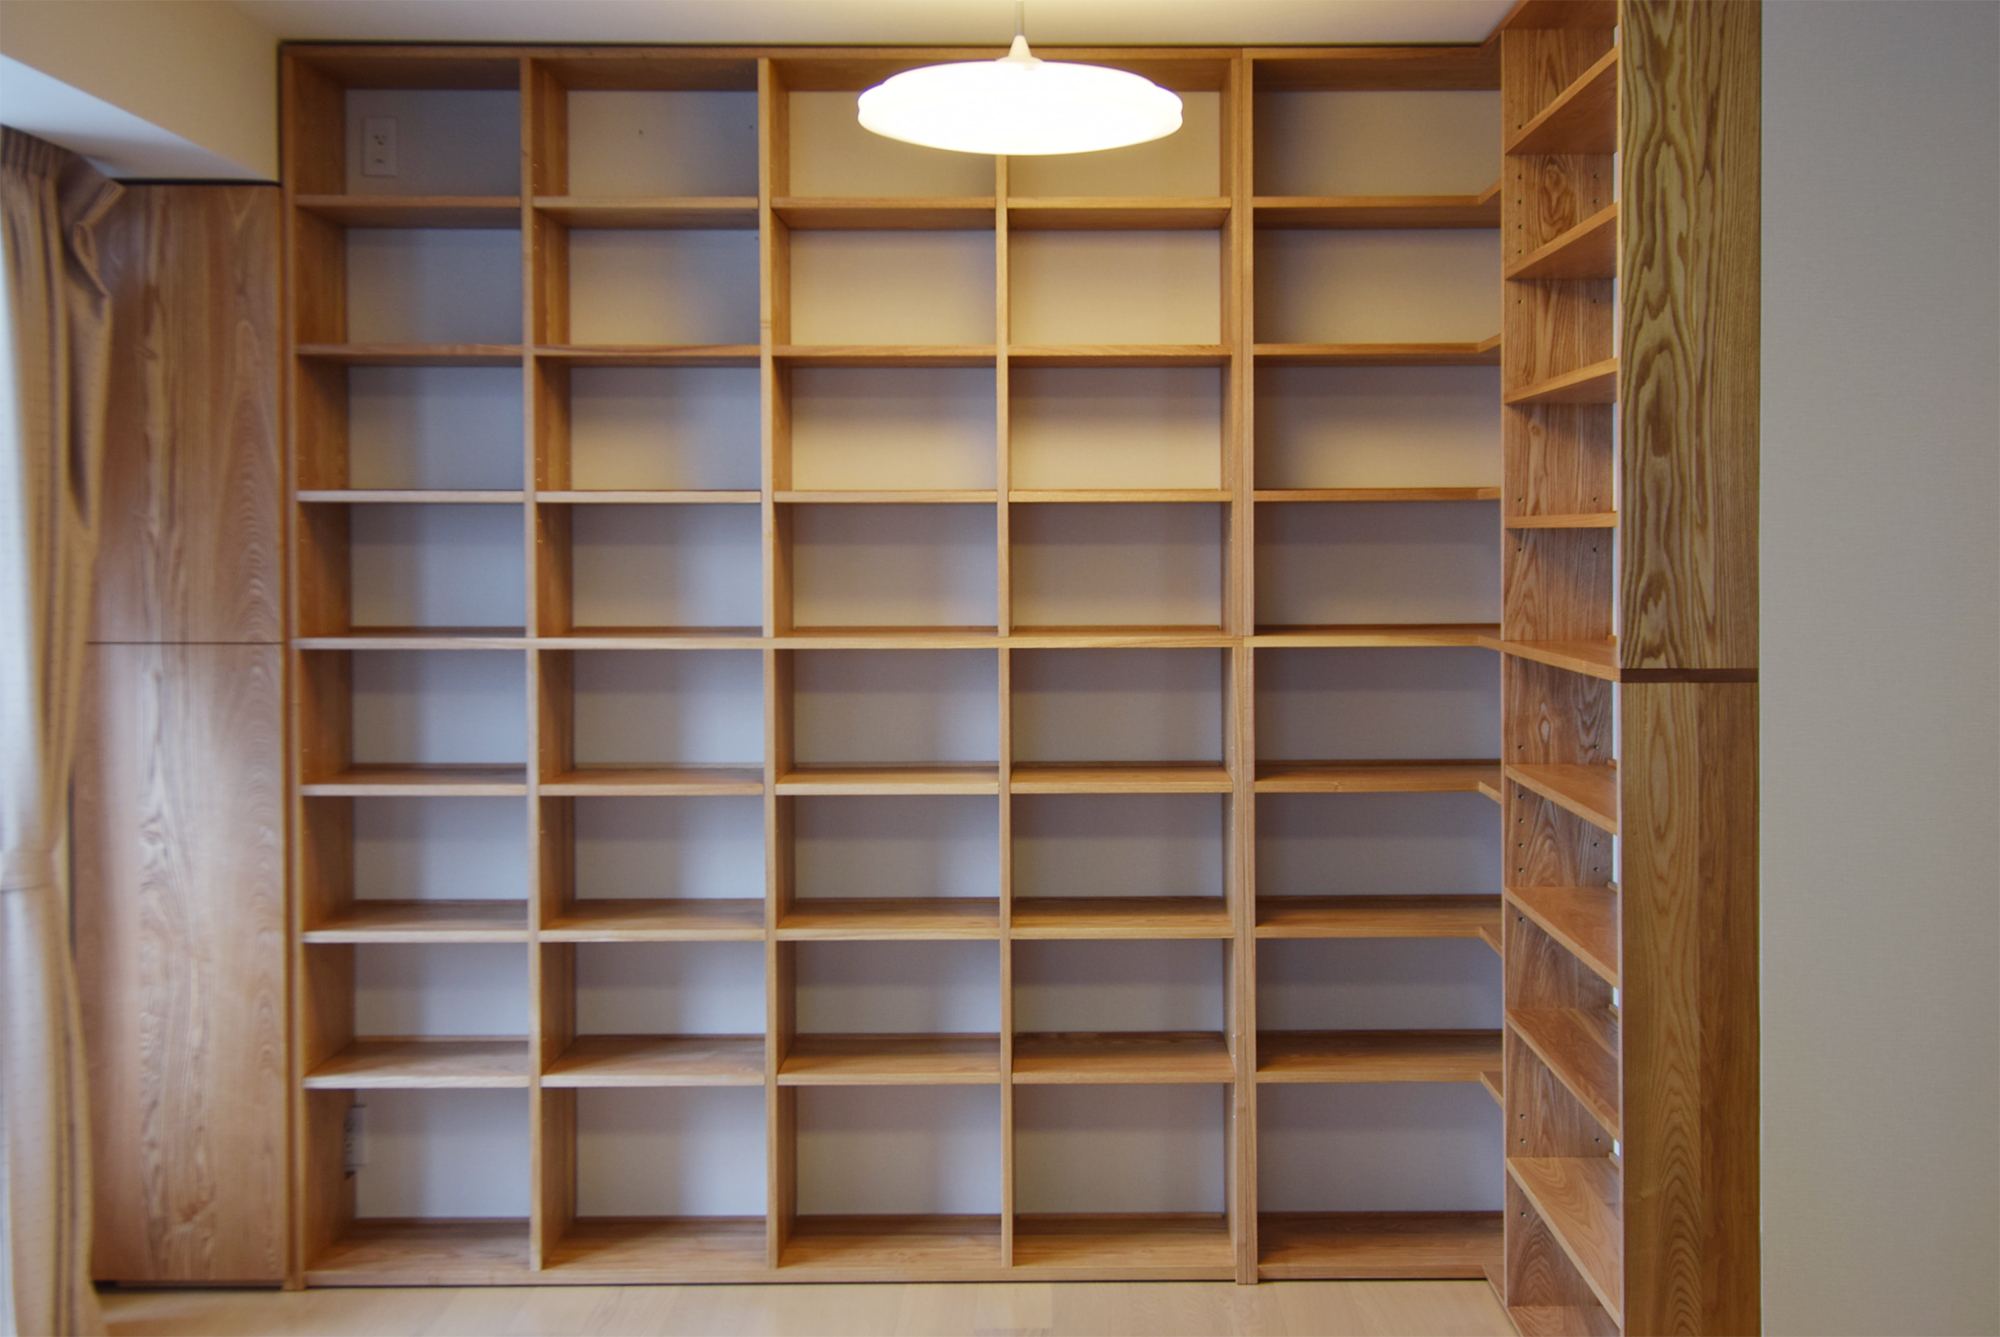 TANA 壁面収納家具 タモ材の本棚│オーダー家具と無垢天板 東京 WOODWORK